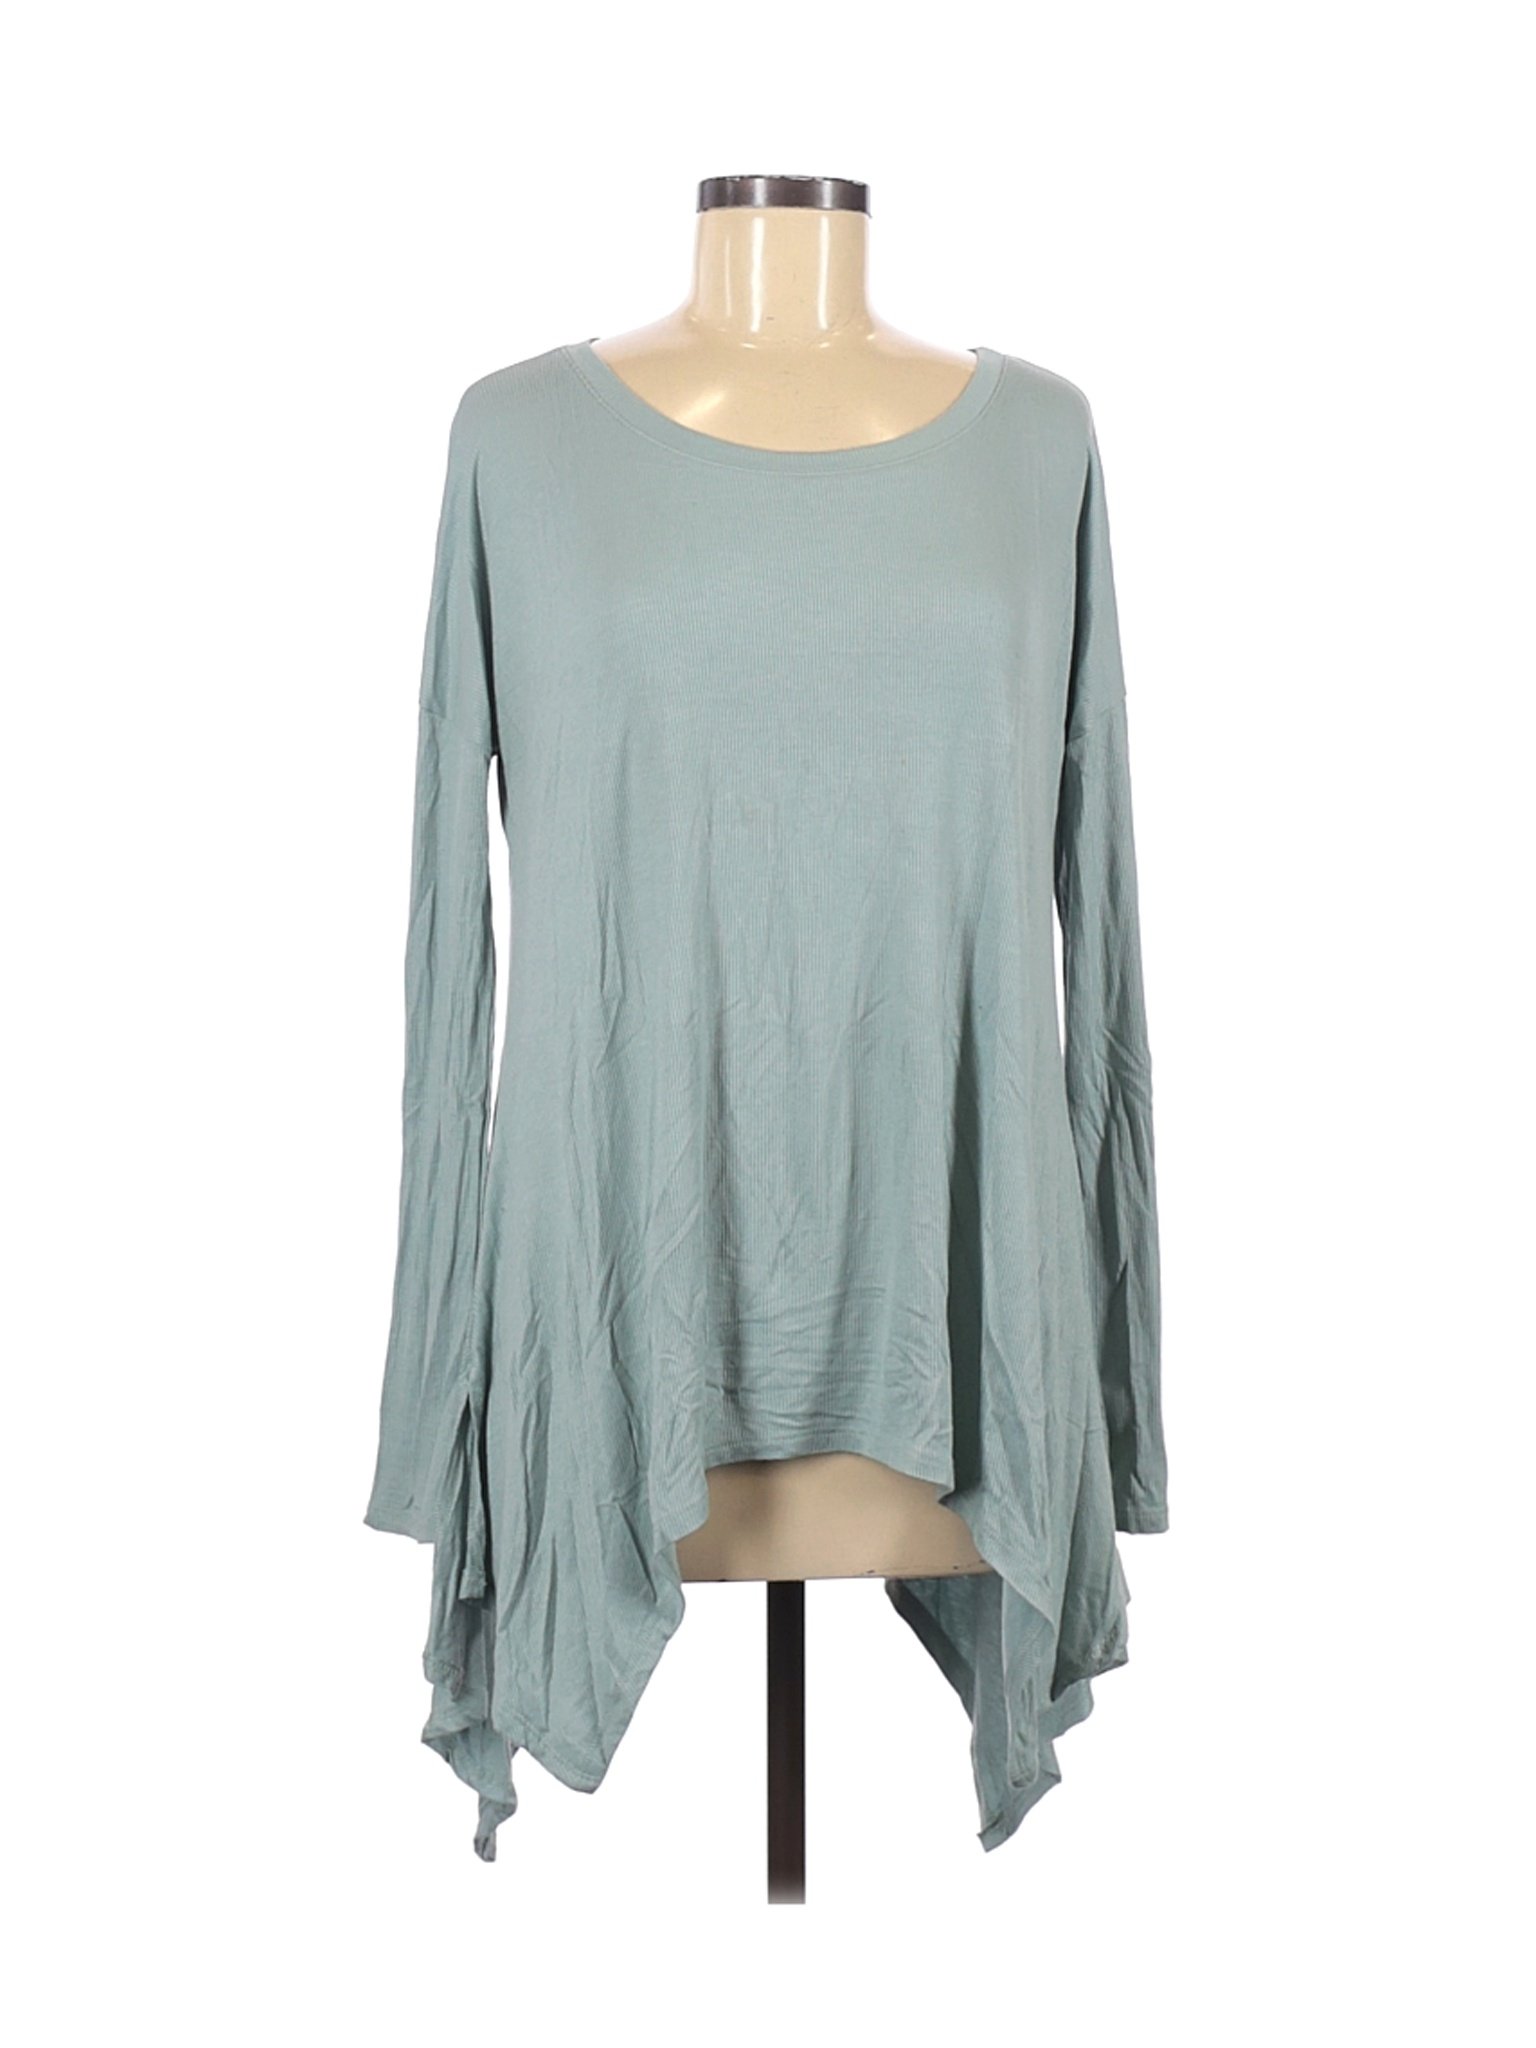 Grace & Lace Women Green Long Sleeve Top M | eBay